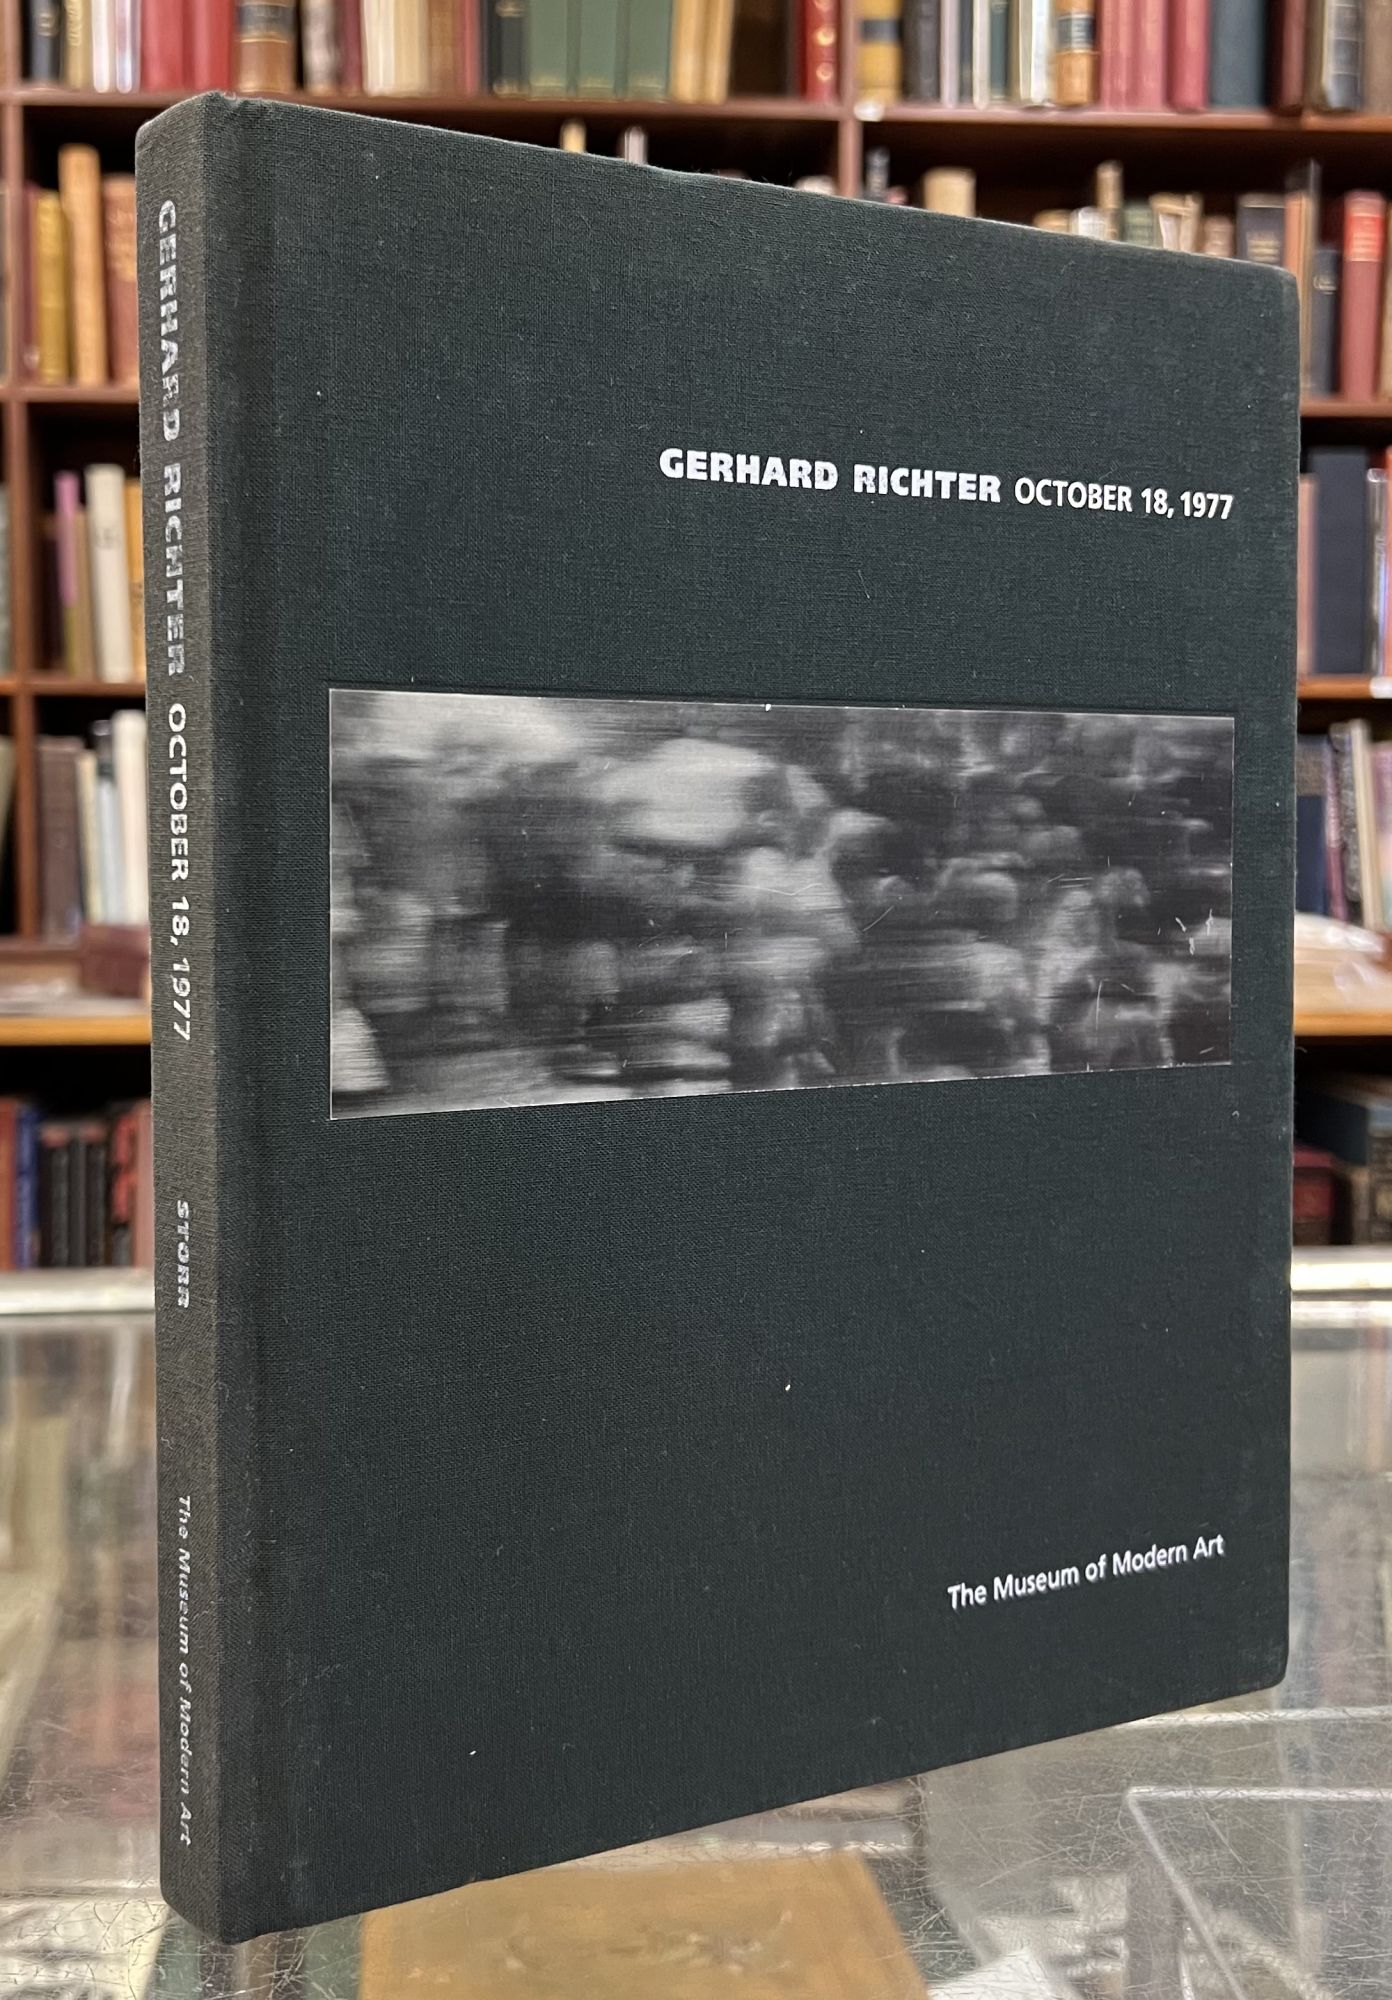 Gerhard Richter: October 18, 1977 - Robert Storr, Gerhard Richter